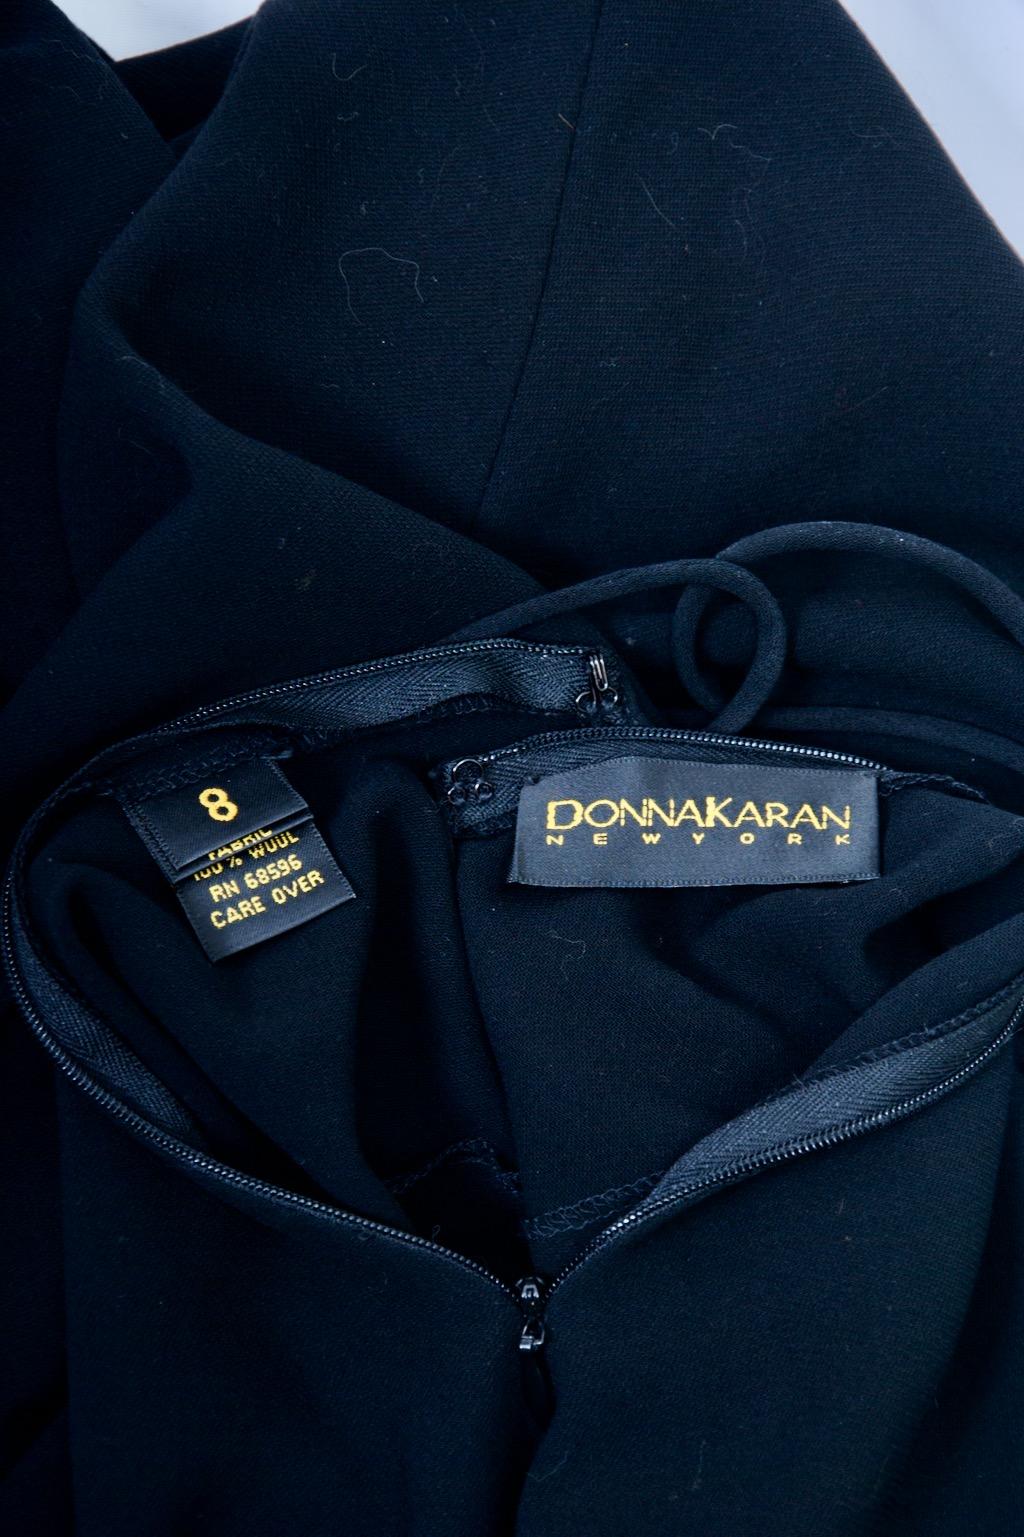 Donna Karan Vintage Jumper and Bodysuit For Sale 10